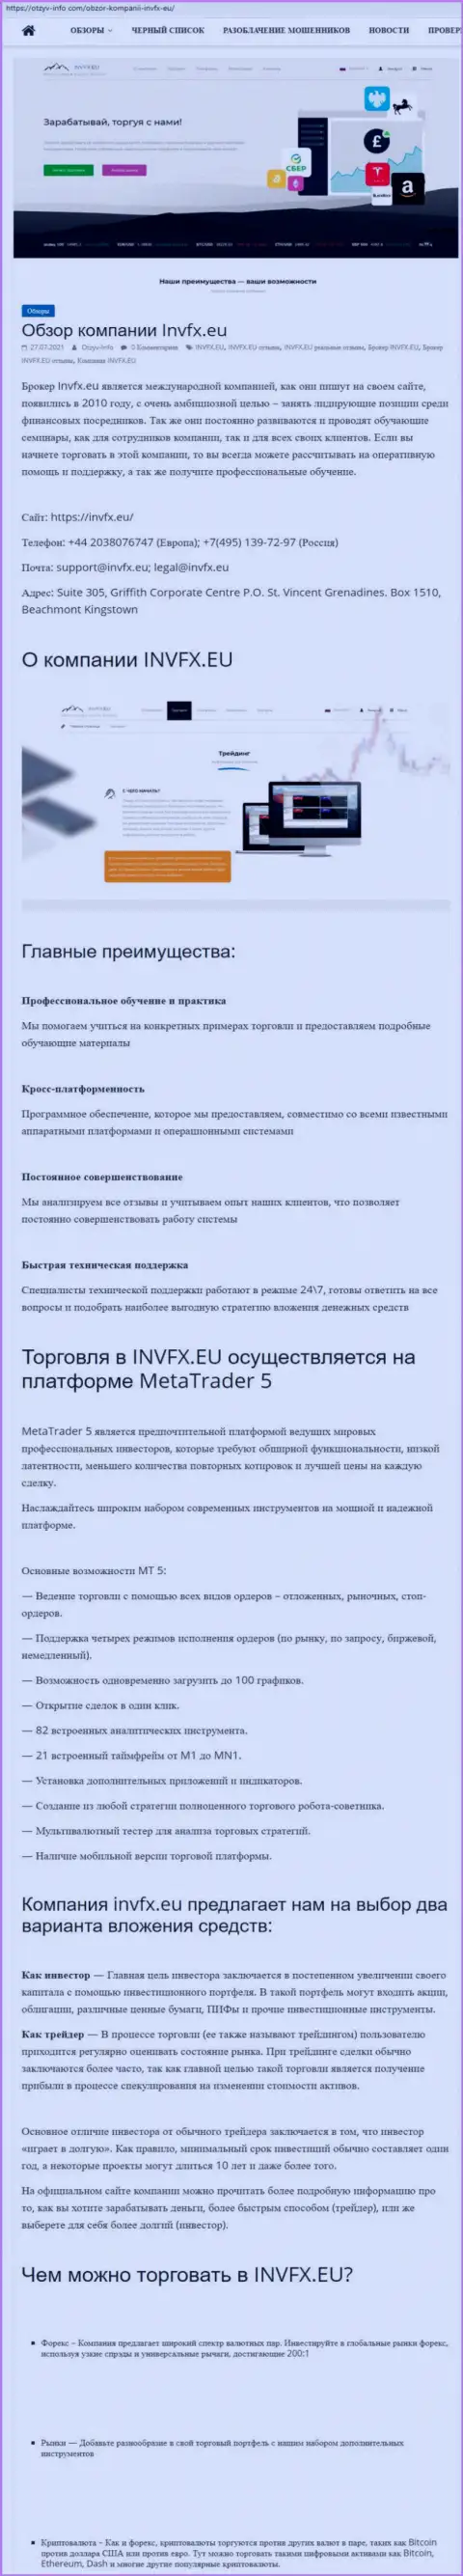 Сайт otzyv-info com опубликовал обзорную статью об ФОРЕКС-дилере INVFX